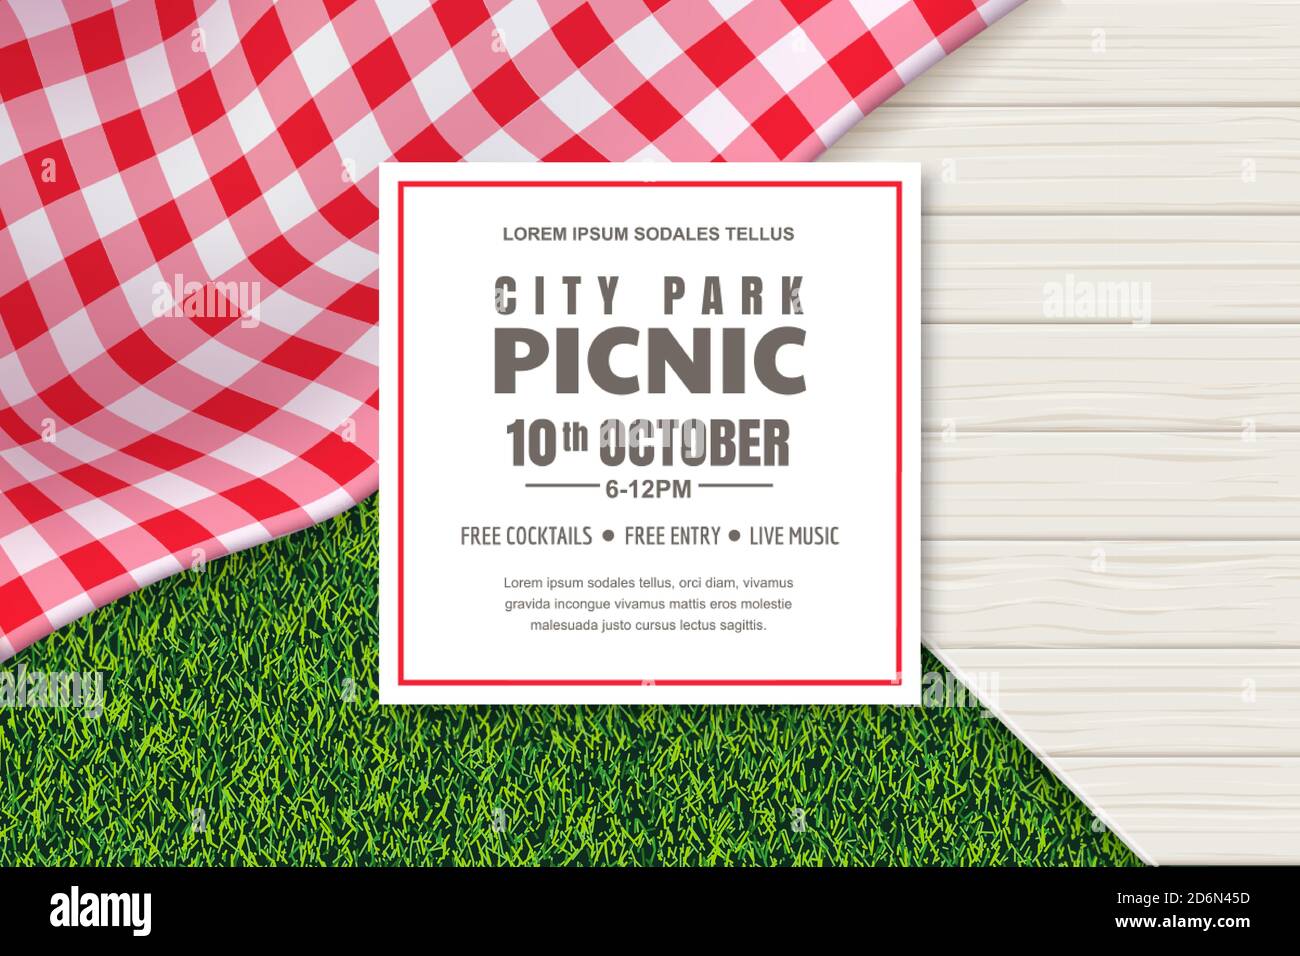 Design-Vorlage für Picknick-Poster oder Banner. Vektor Hintergrund mit realistischen roten Gingham Plaid oder Tischdecke, weißen Holztisch und grünen Rasen. Re Stock Vektor